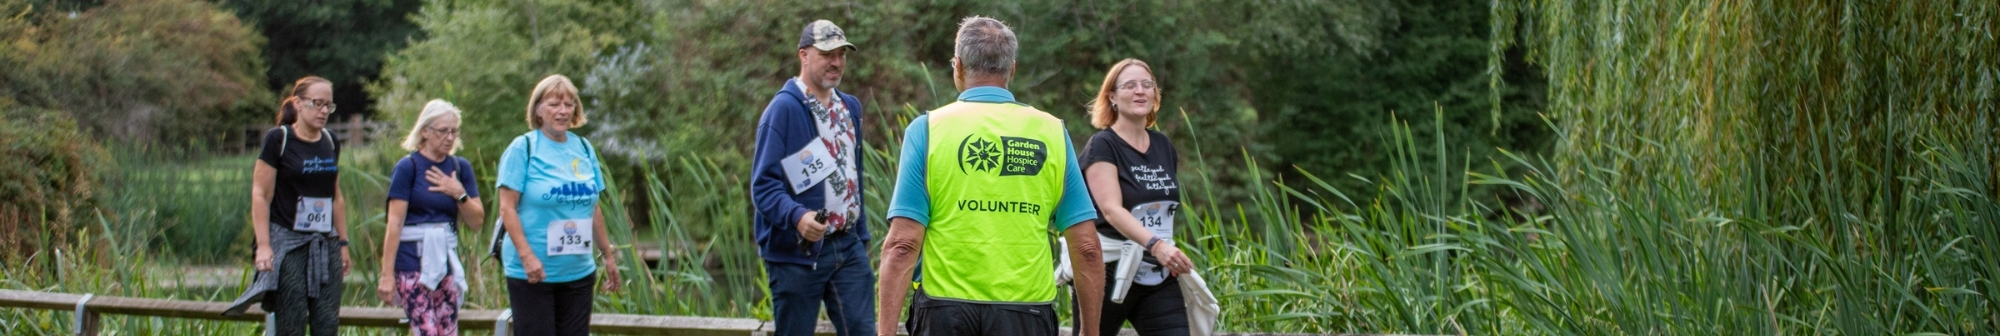 volunteer-marshall-guides-walkers-across-road